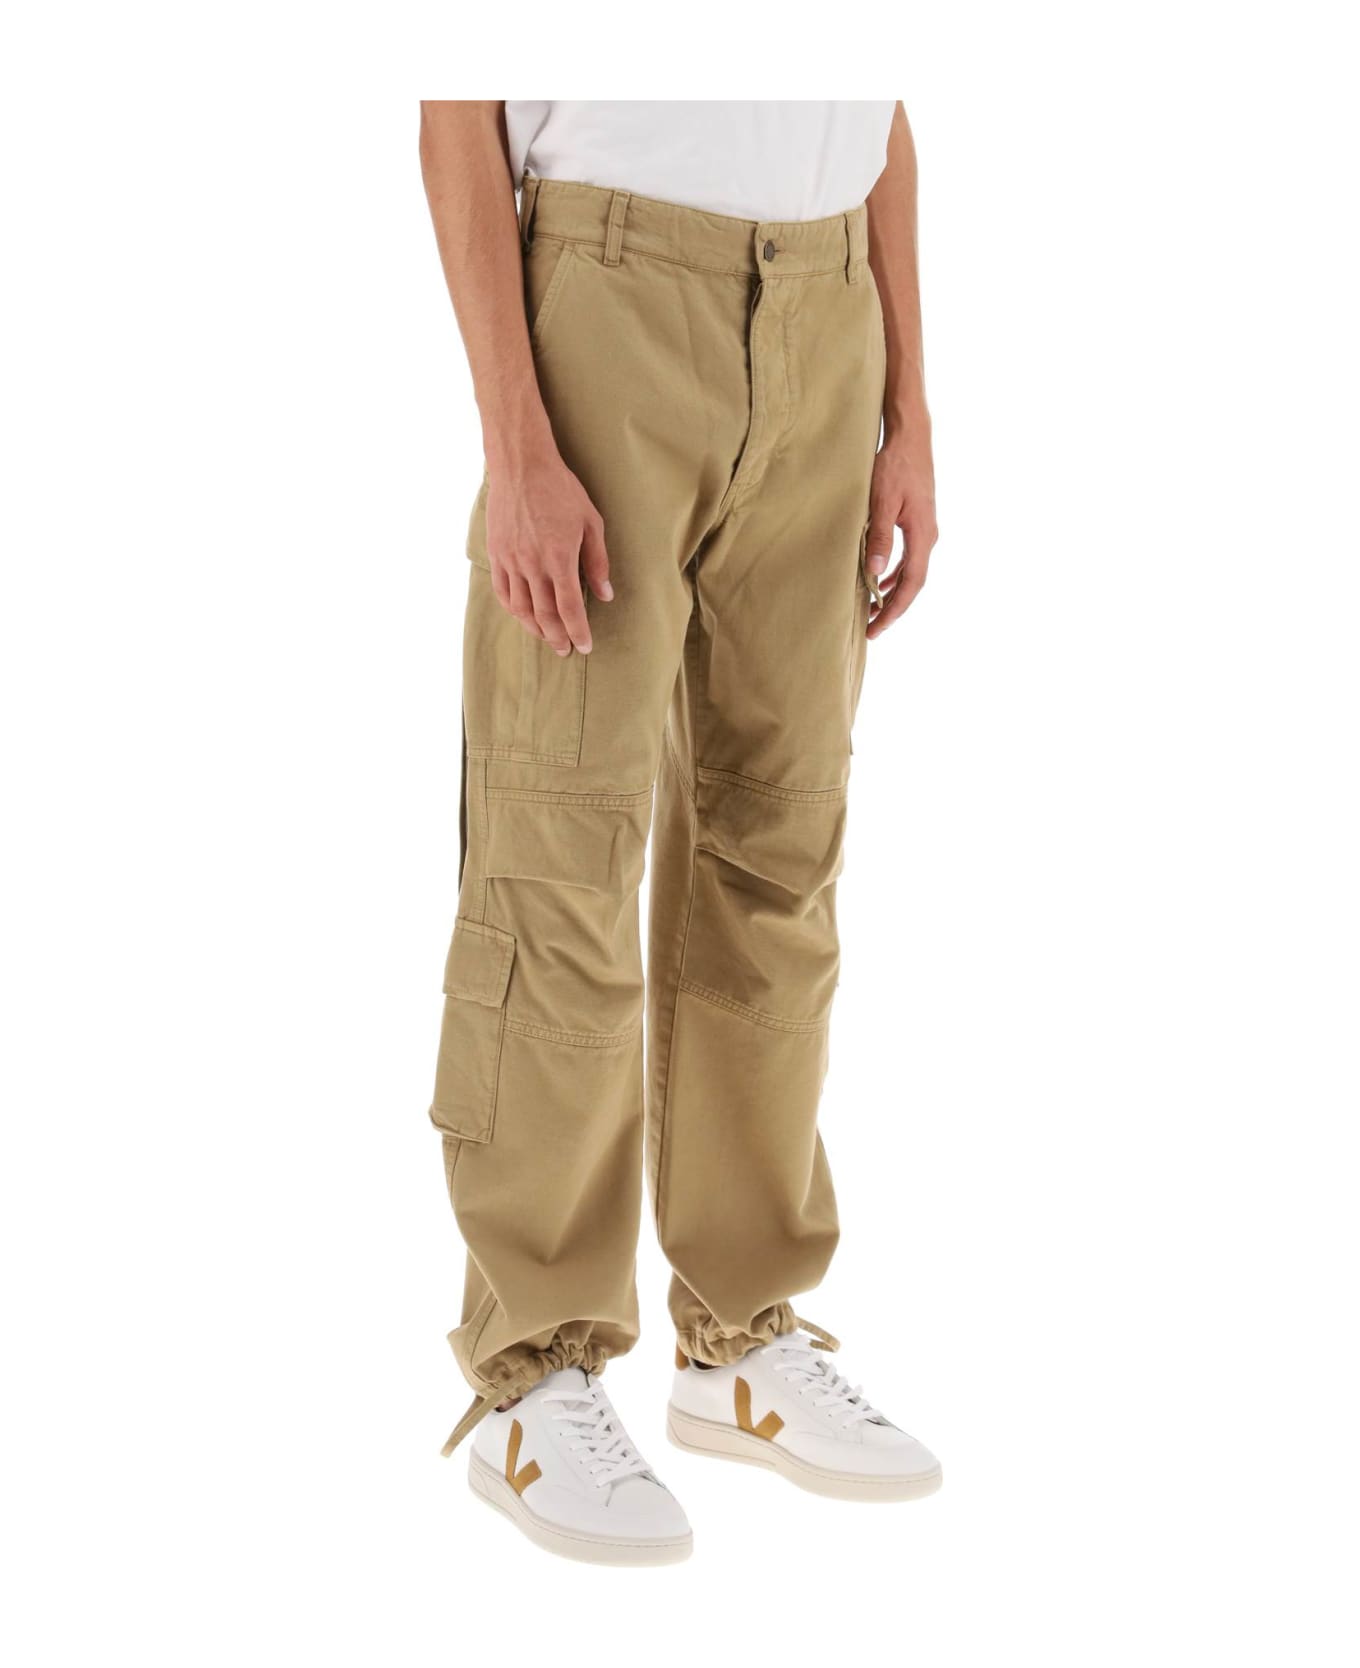 DARKPARK Saint Cotton Cargo Pants - BEIGE (Beige)